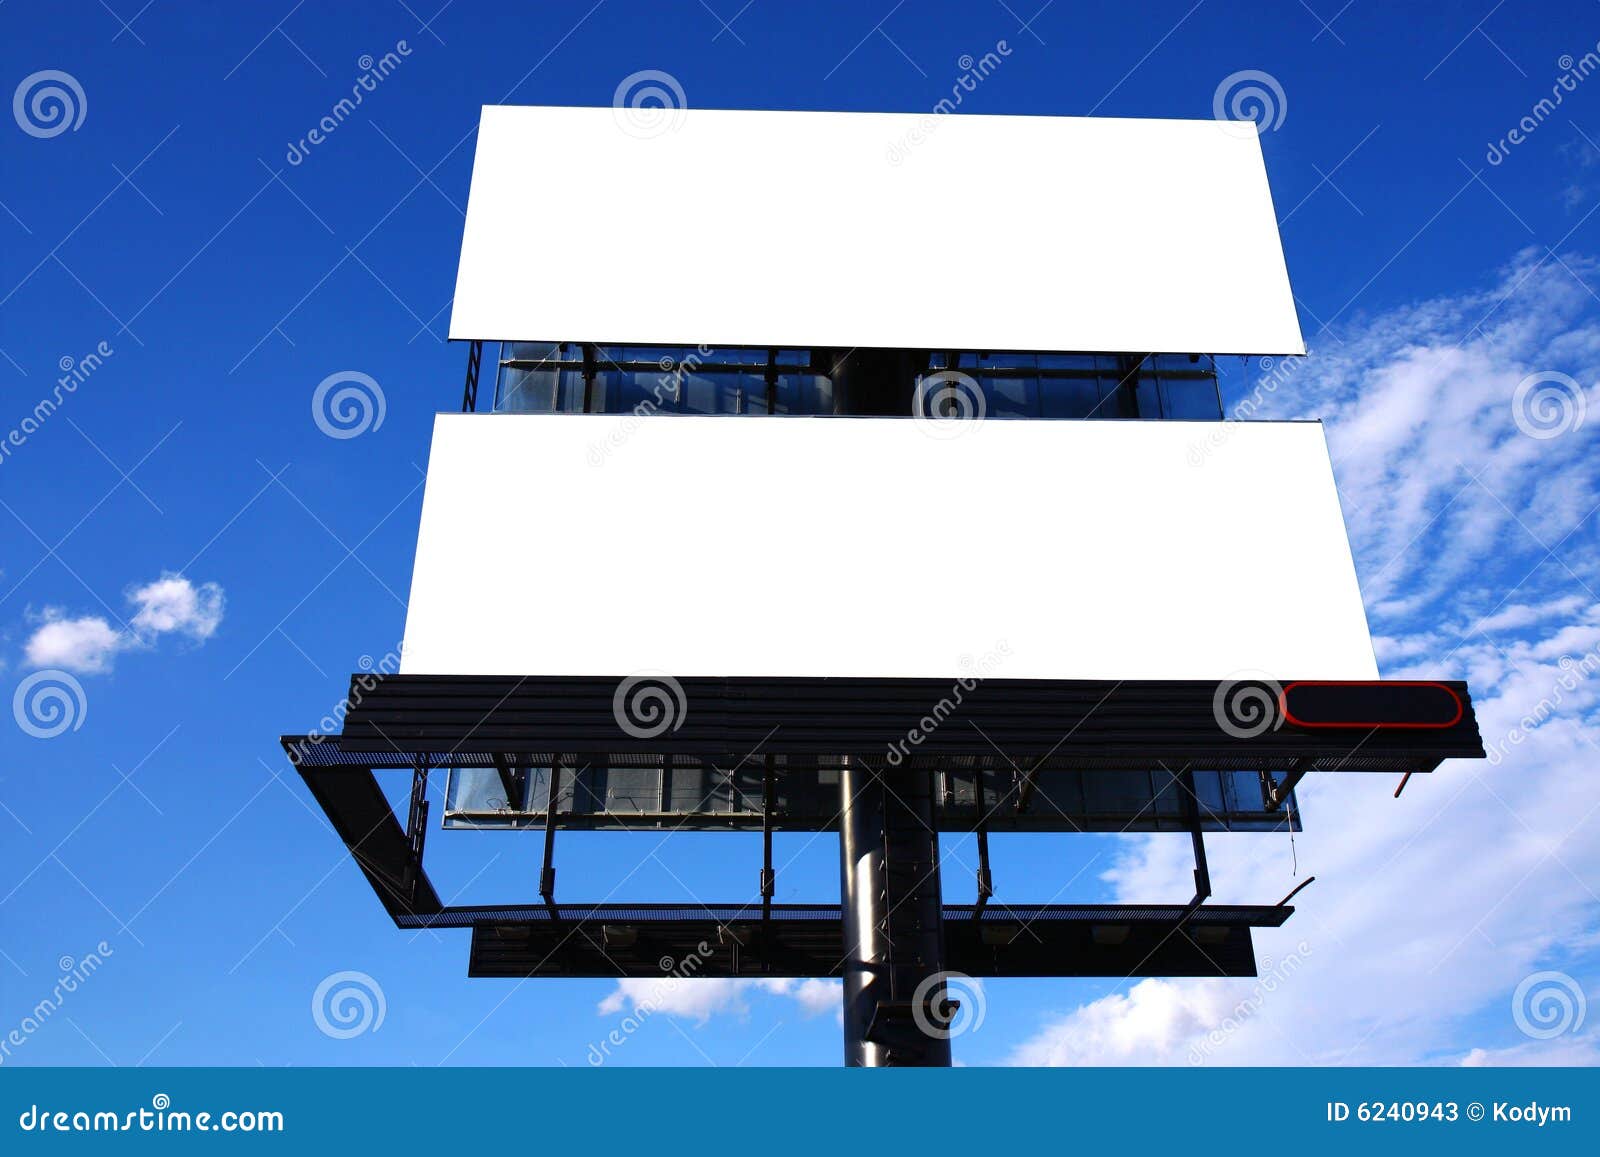 double big outdoor advertisement billboard